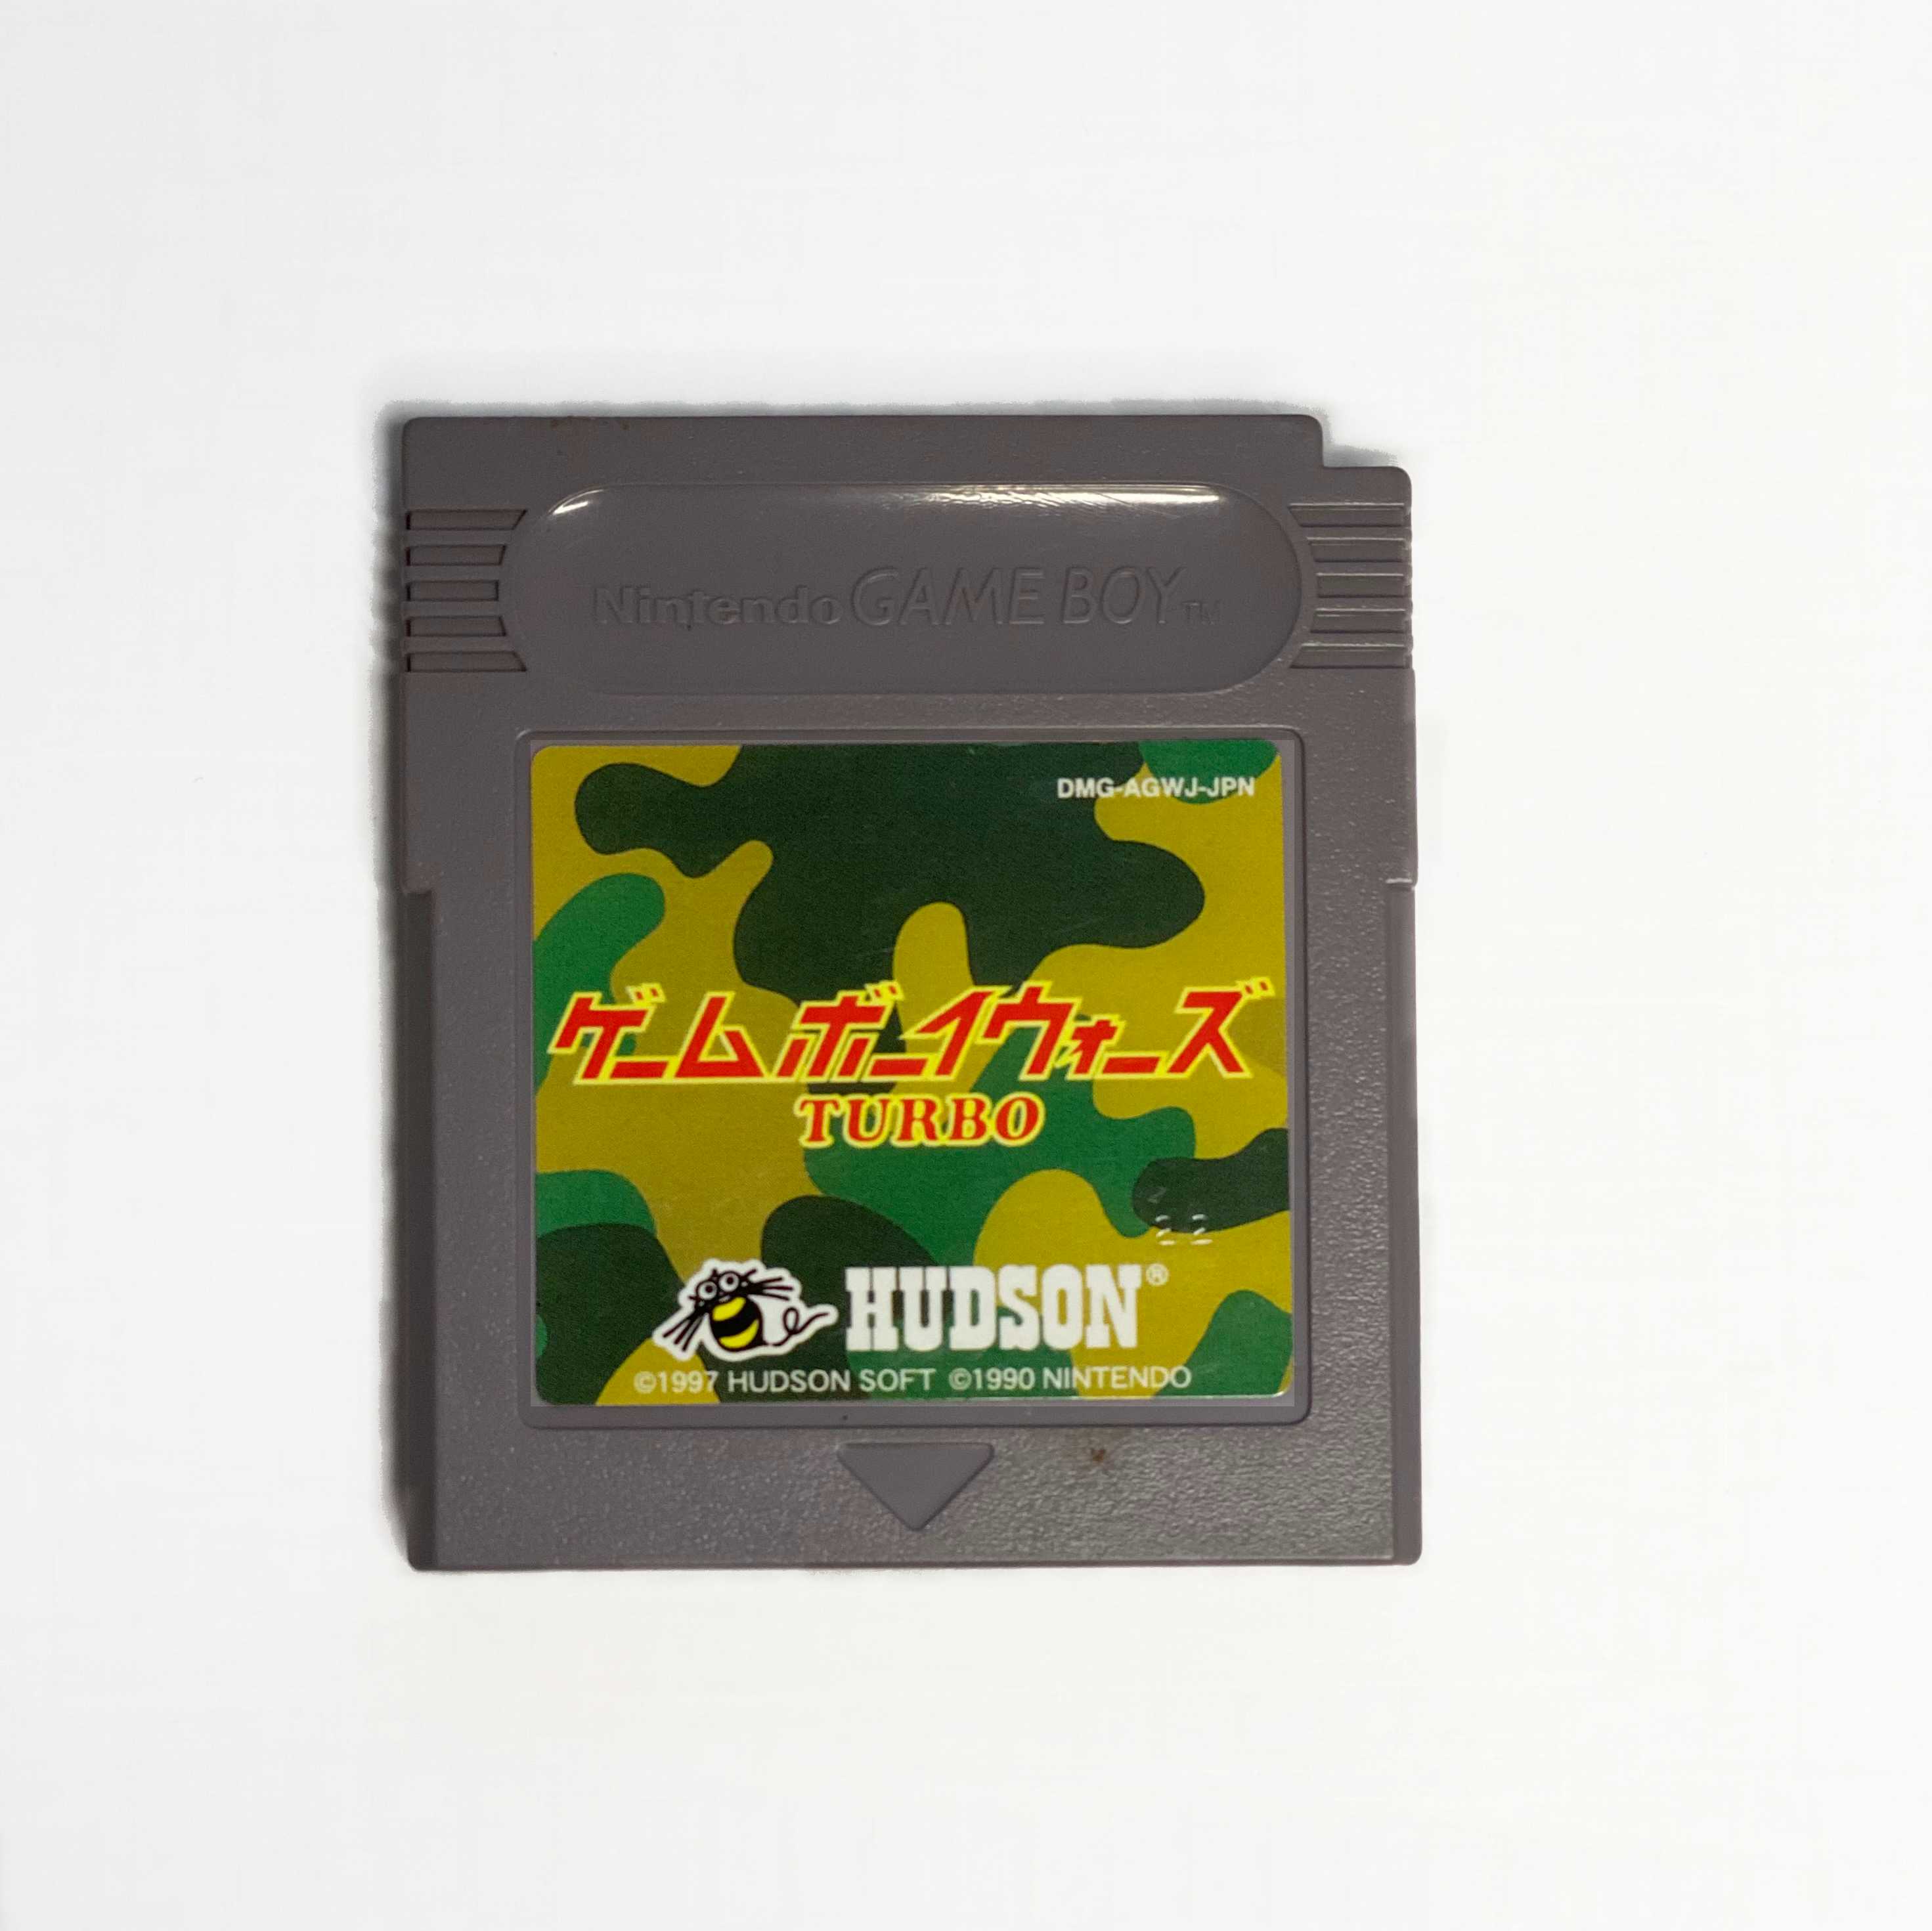 Game Boy Wars Turbo (Japanese)